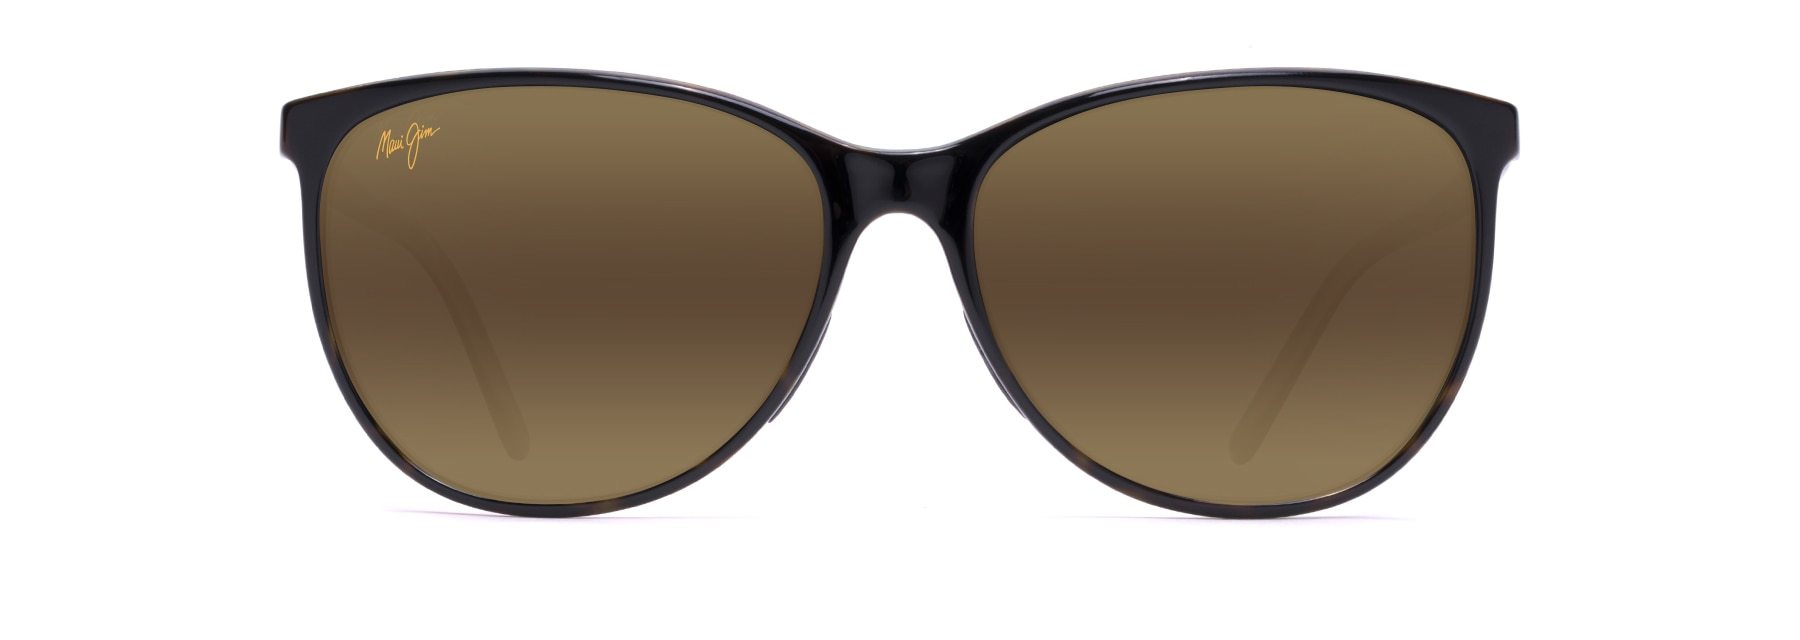 MyMaui Ocean MM723-002 Sunglasses